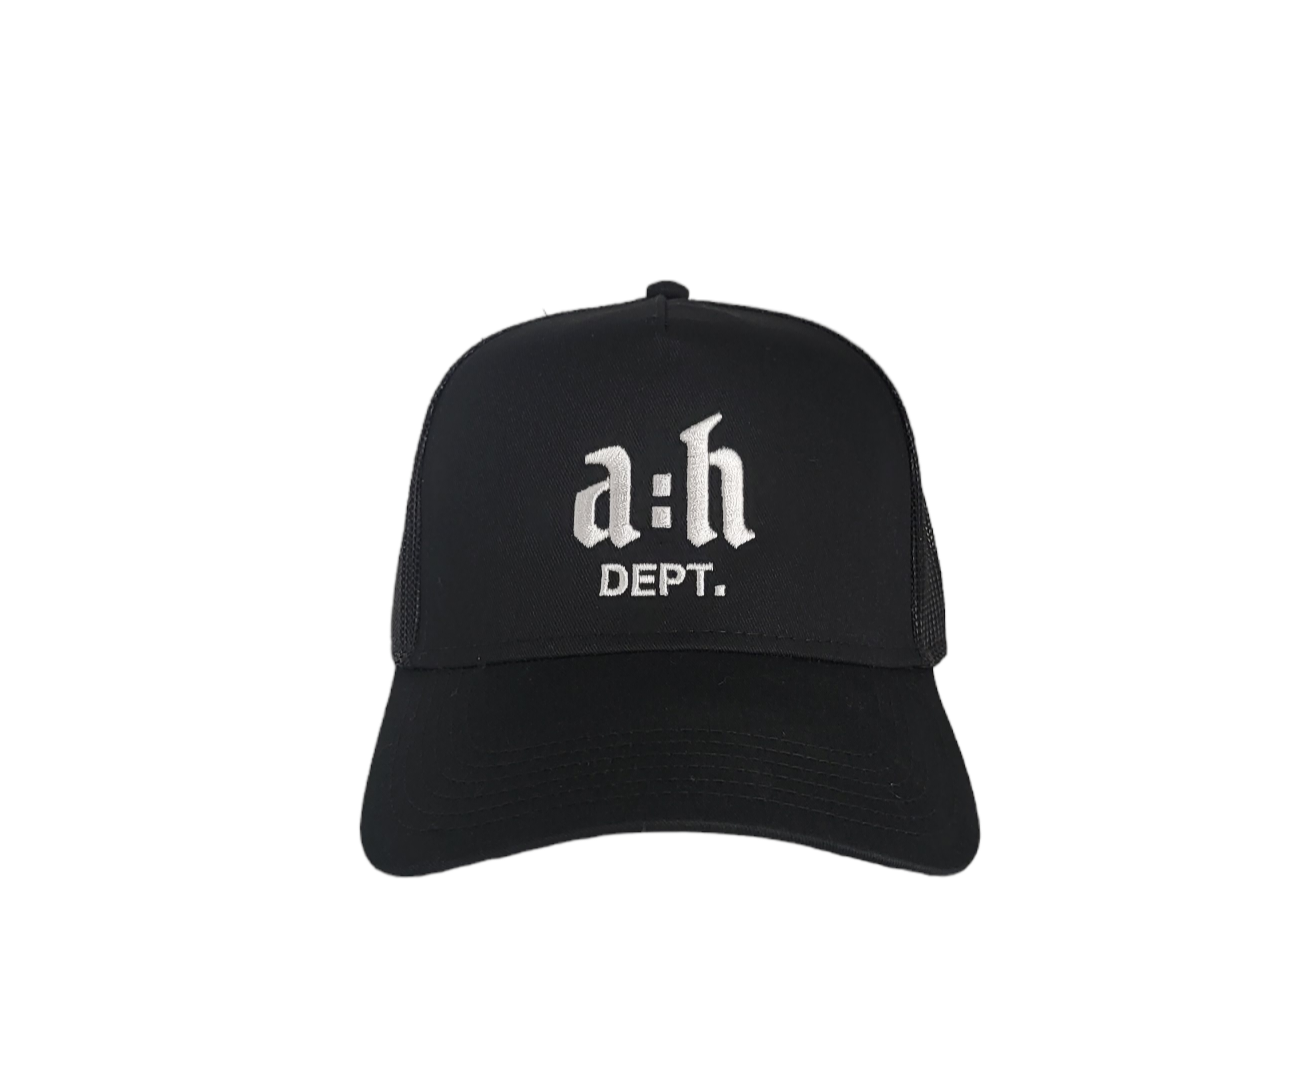 "A:H DEPT." Trucker Hat